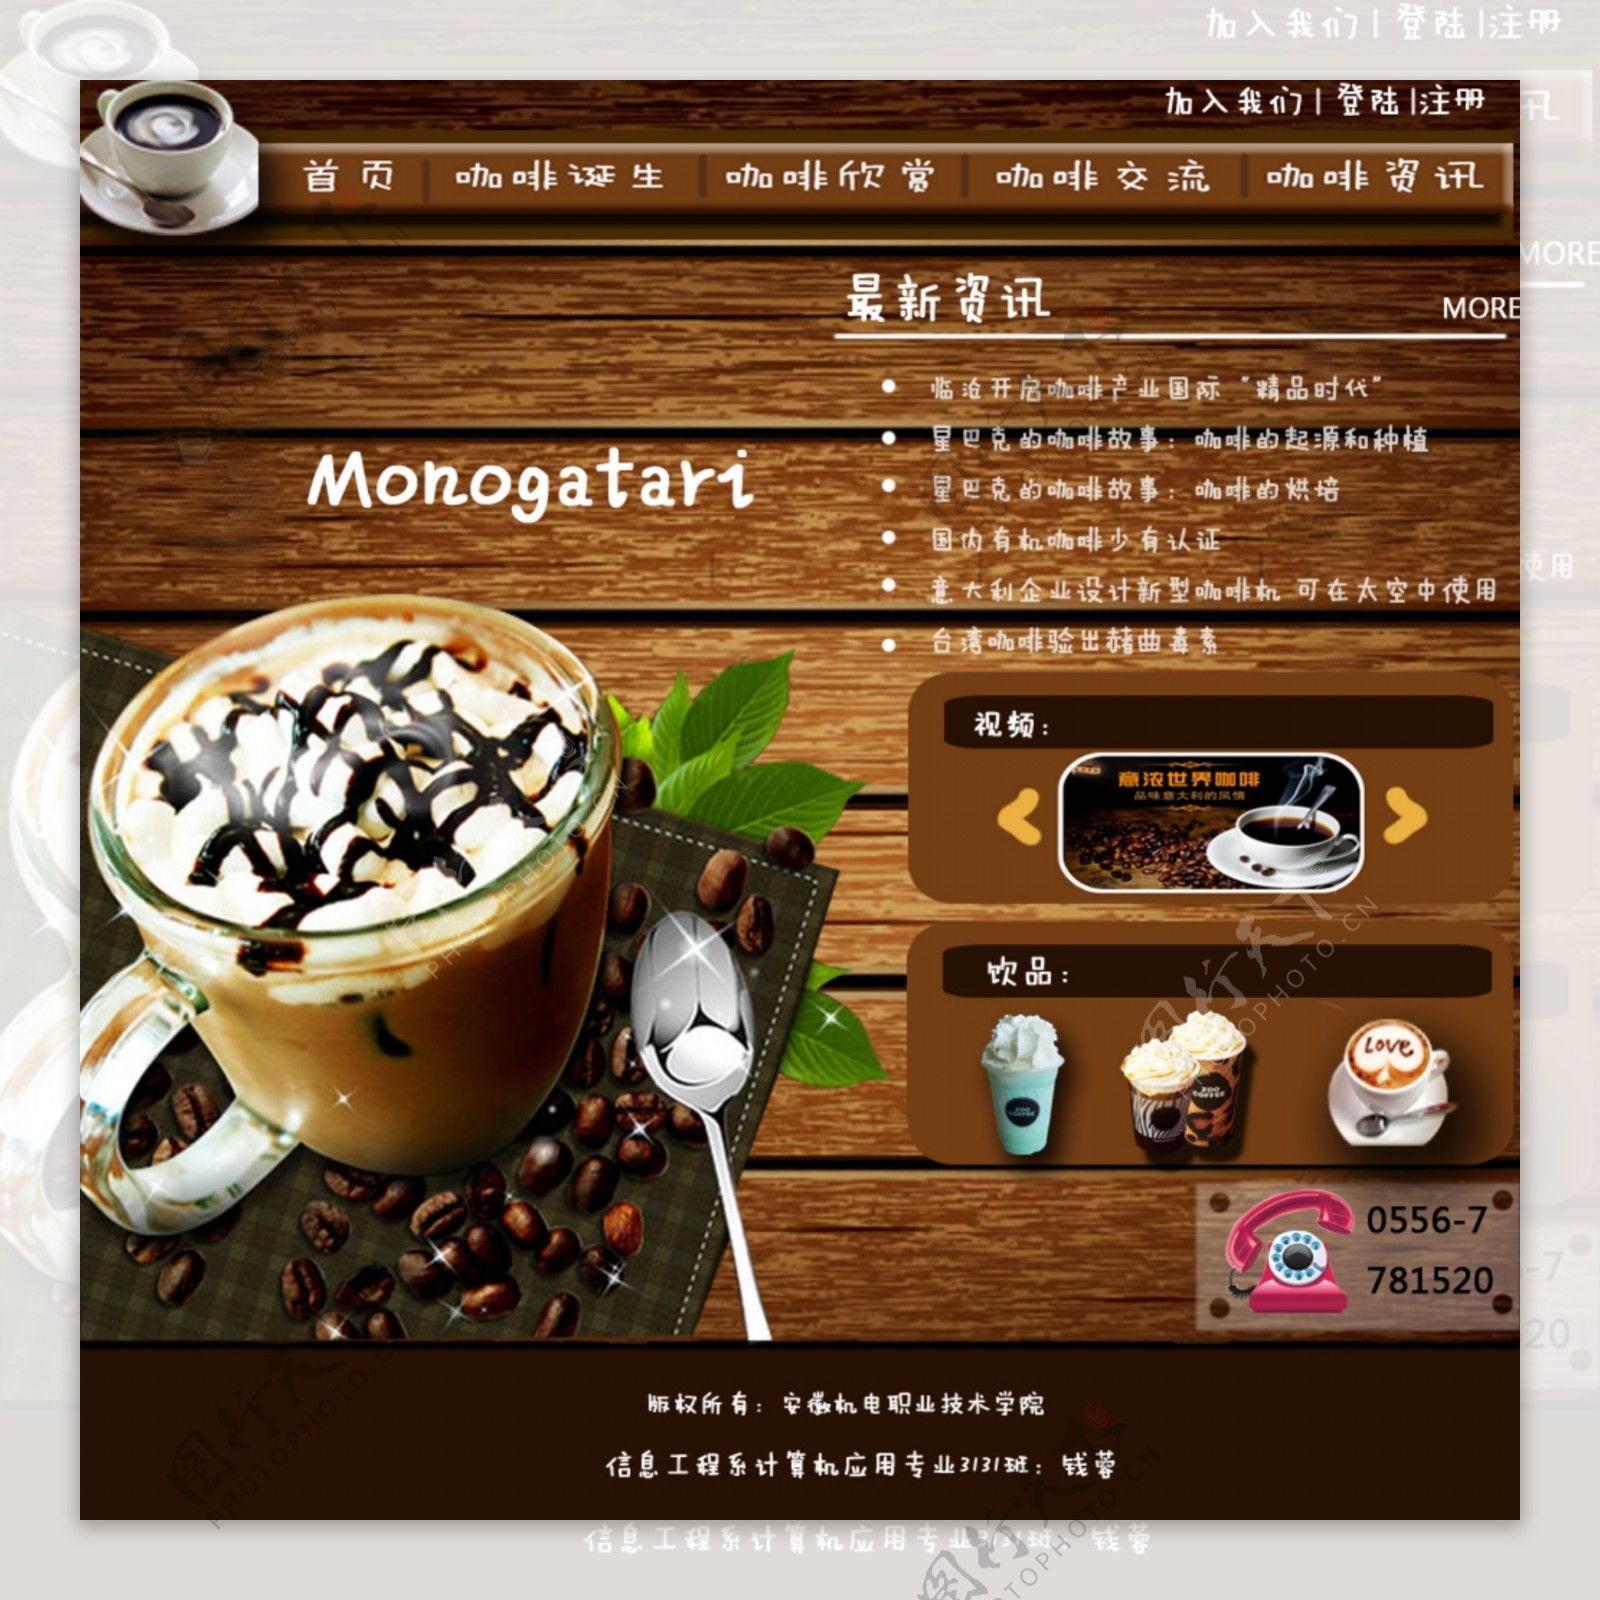 精美咖啡网页设计